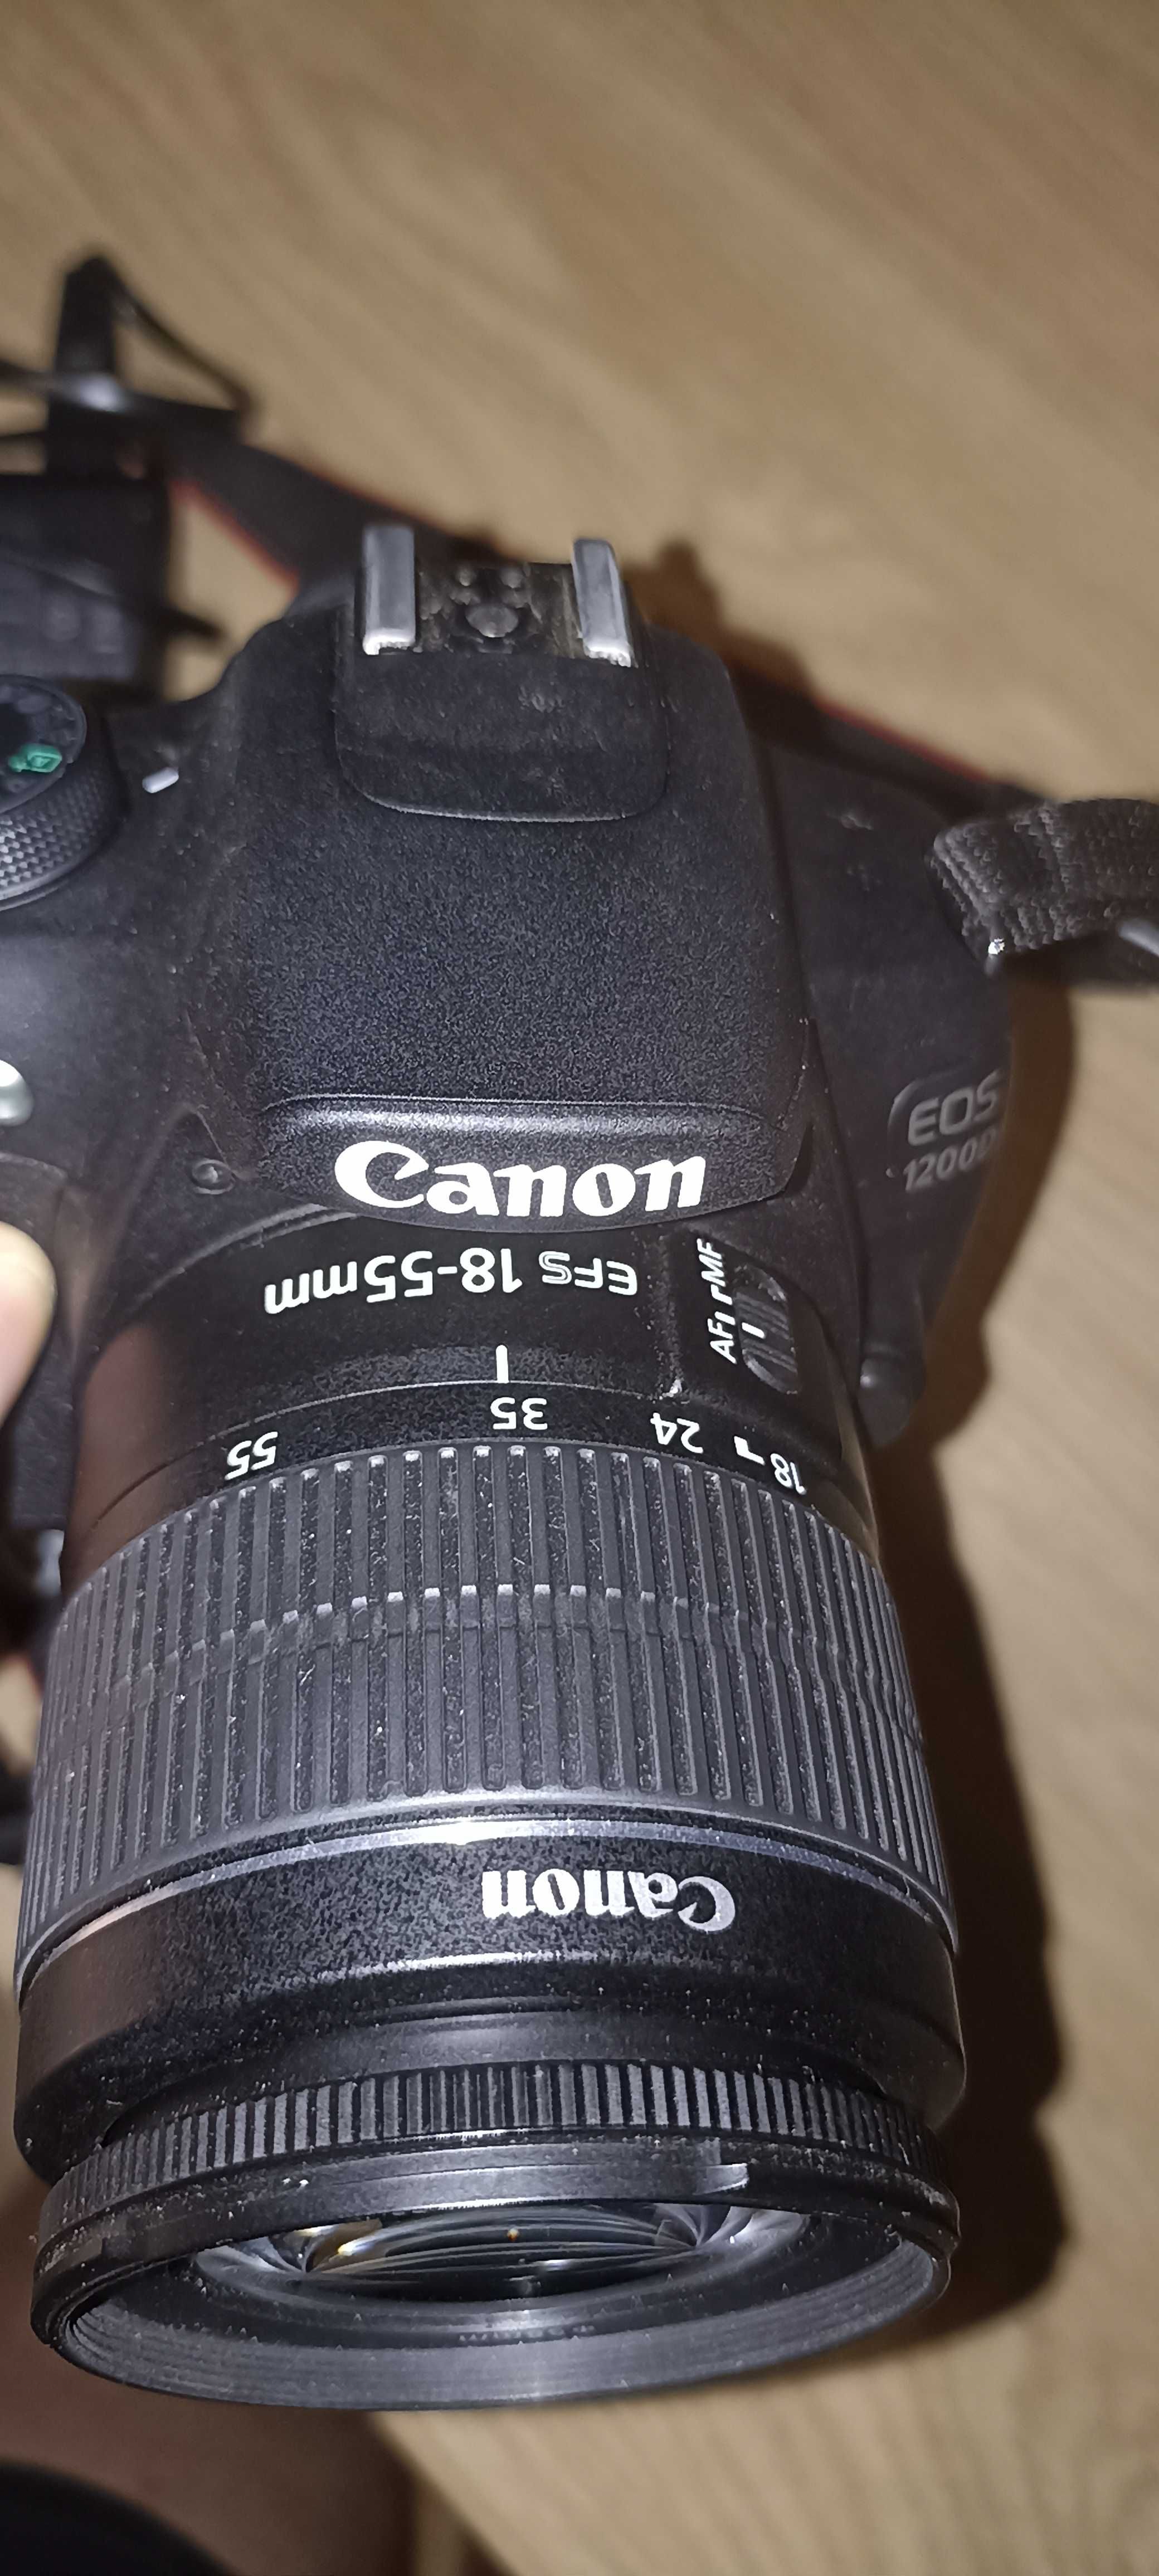 Aparat Canon EOS 1200D